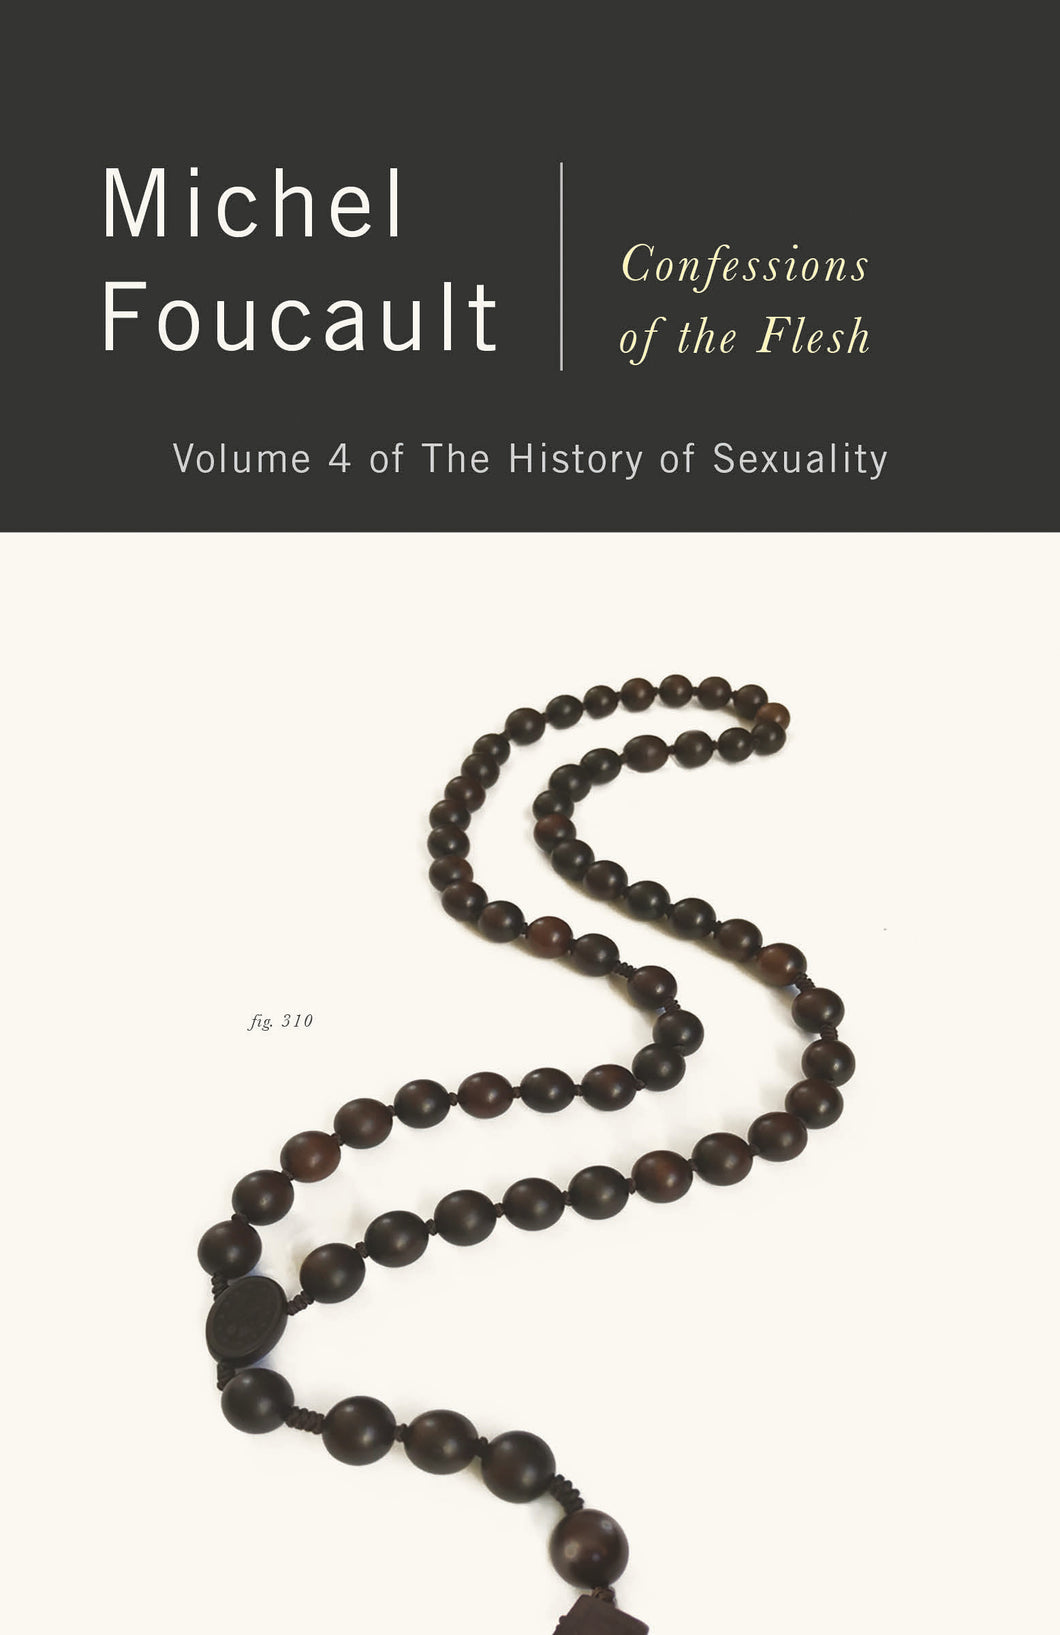 Confessions of the Flesh: The History of Sexuality, Volume 4 ร้านหนังสือและสิ่งของ เป็นร้านหนังสือภาษาอังกฤษหายาก และร้านกาแฟ หรือ บุ๊คคาเฟ่ ตั้งอยู่สุขุมวิท กรุงเทพ